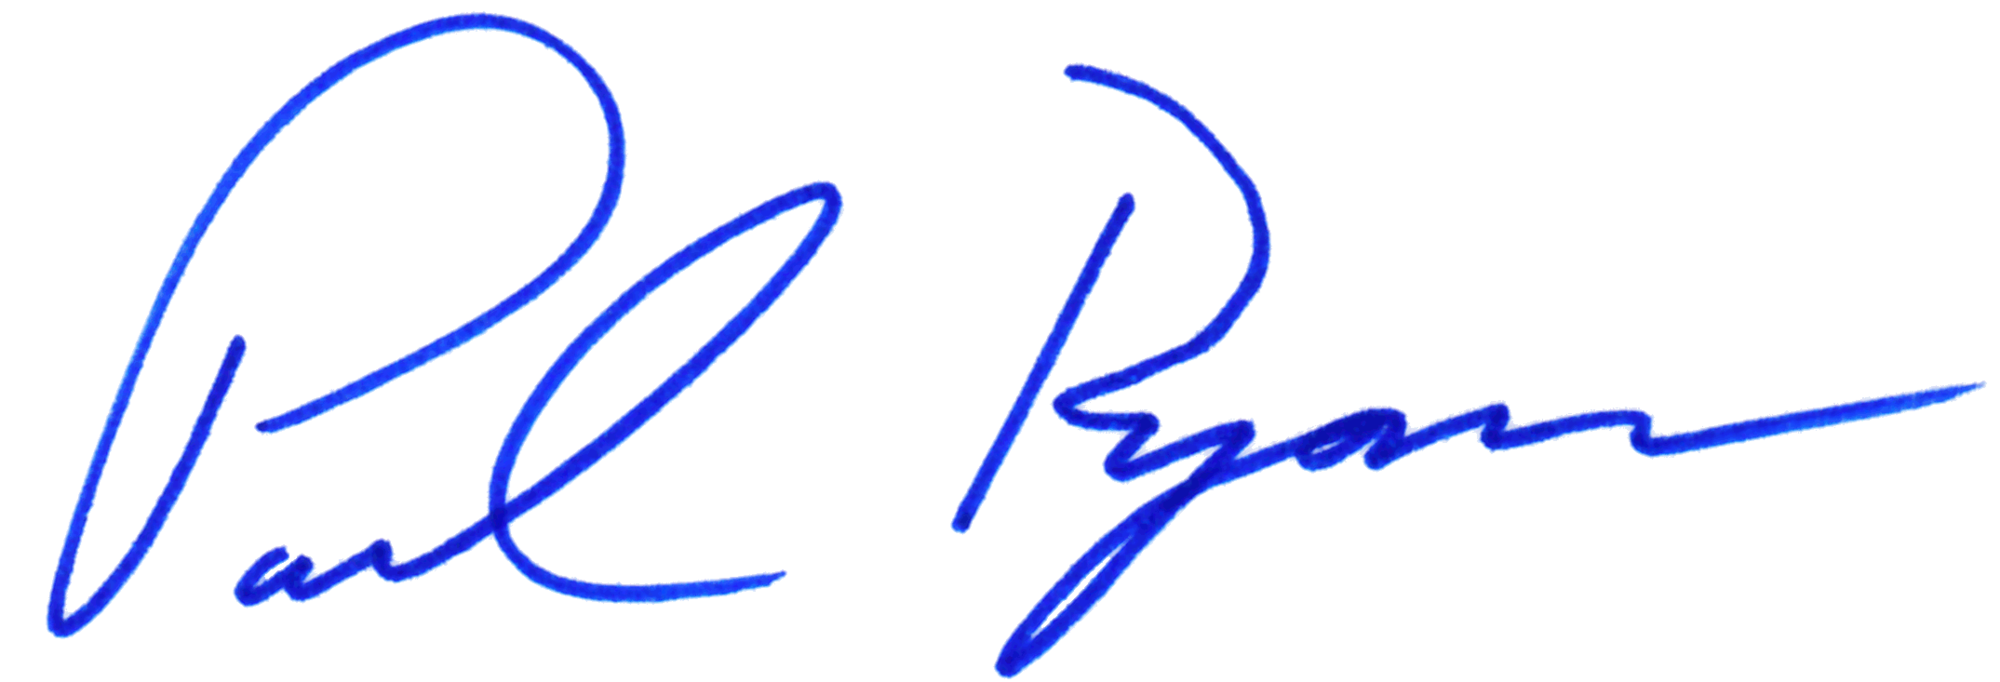 Signature PNG Clipart